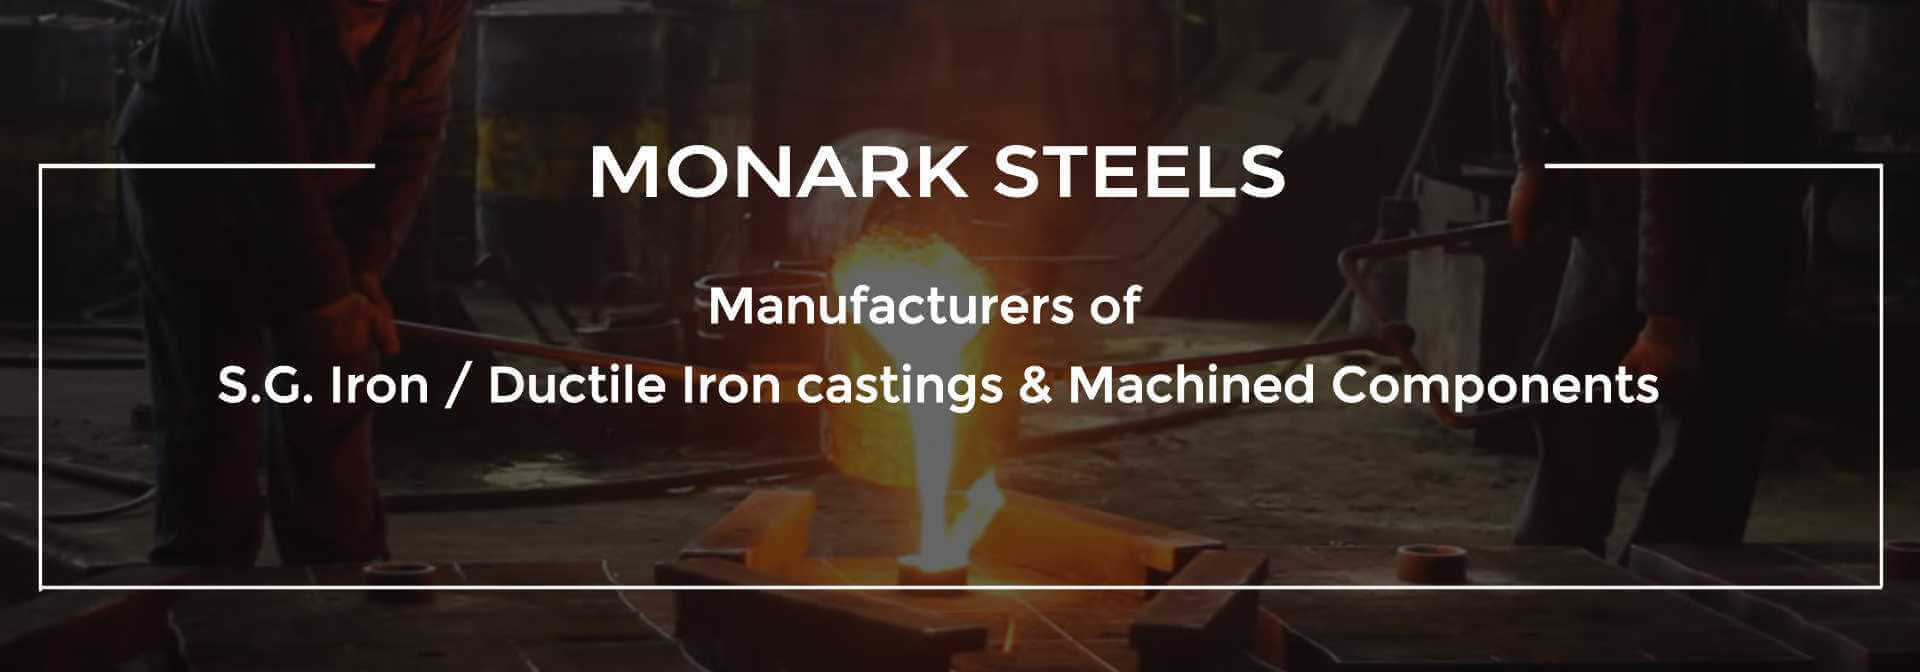 monark-steel-slider